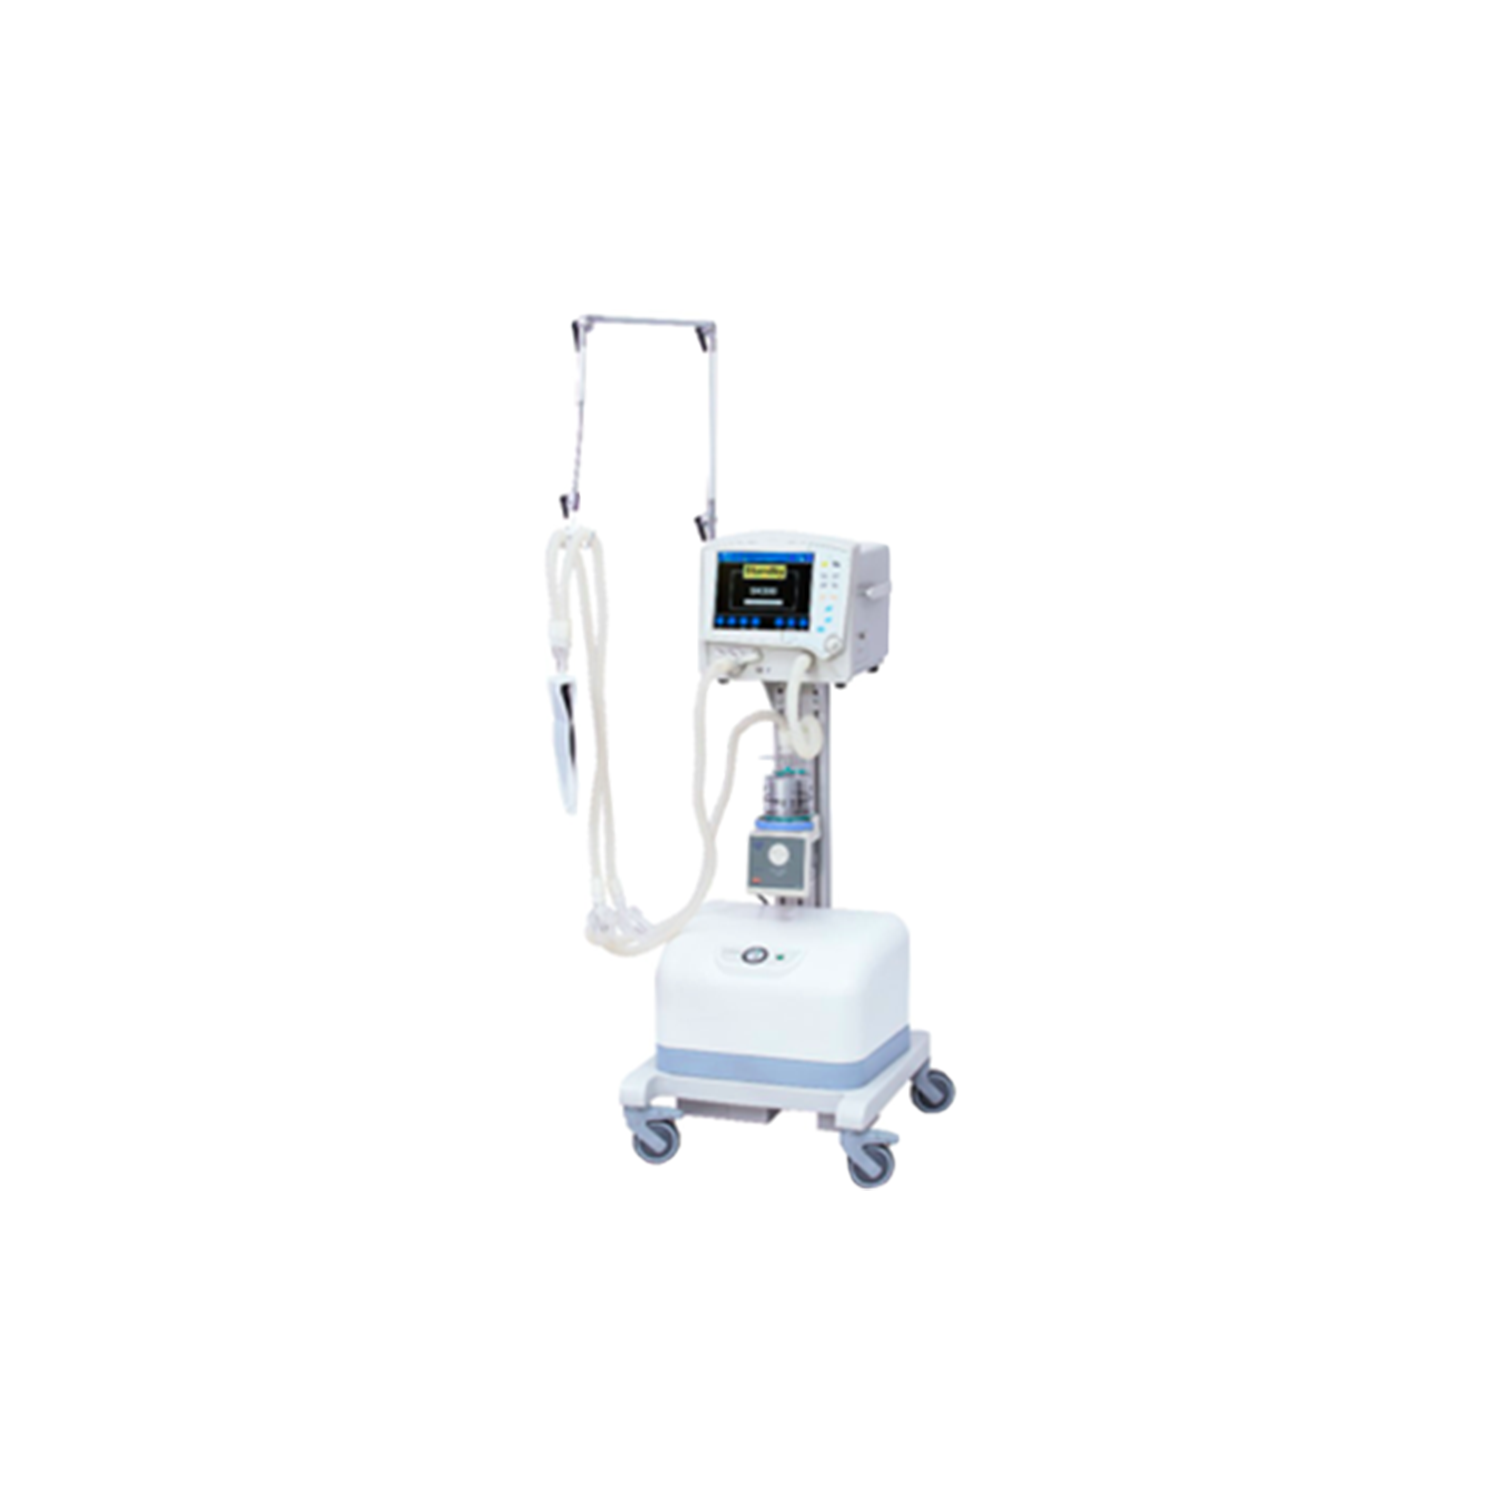 Аппарат ИВЛ (Искусственной вентиляции легких) Altum 300